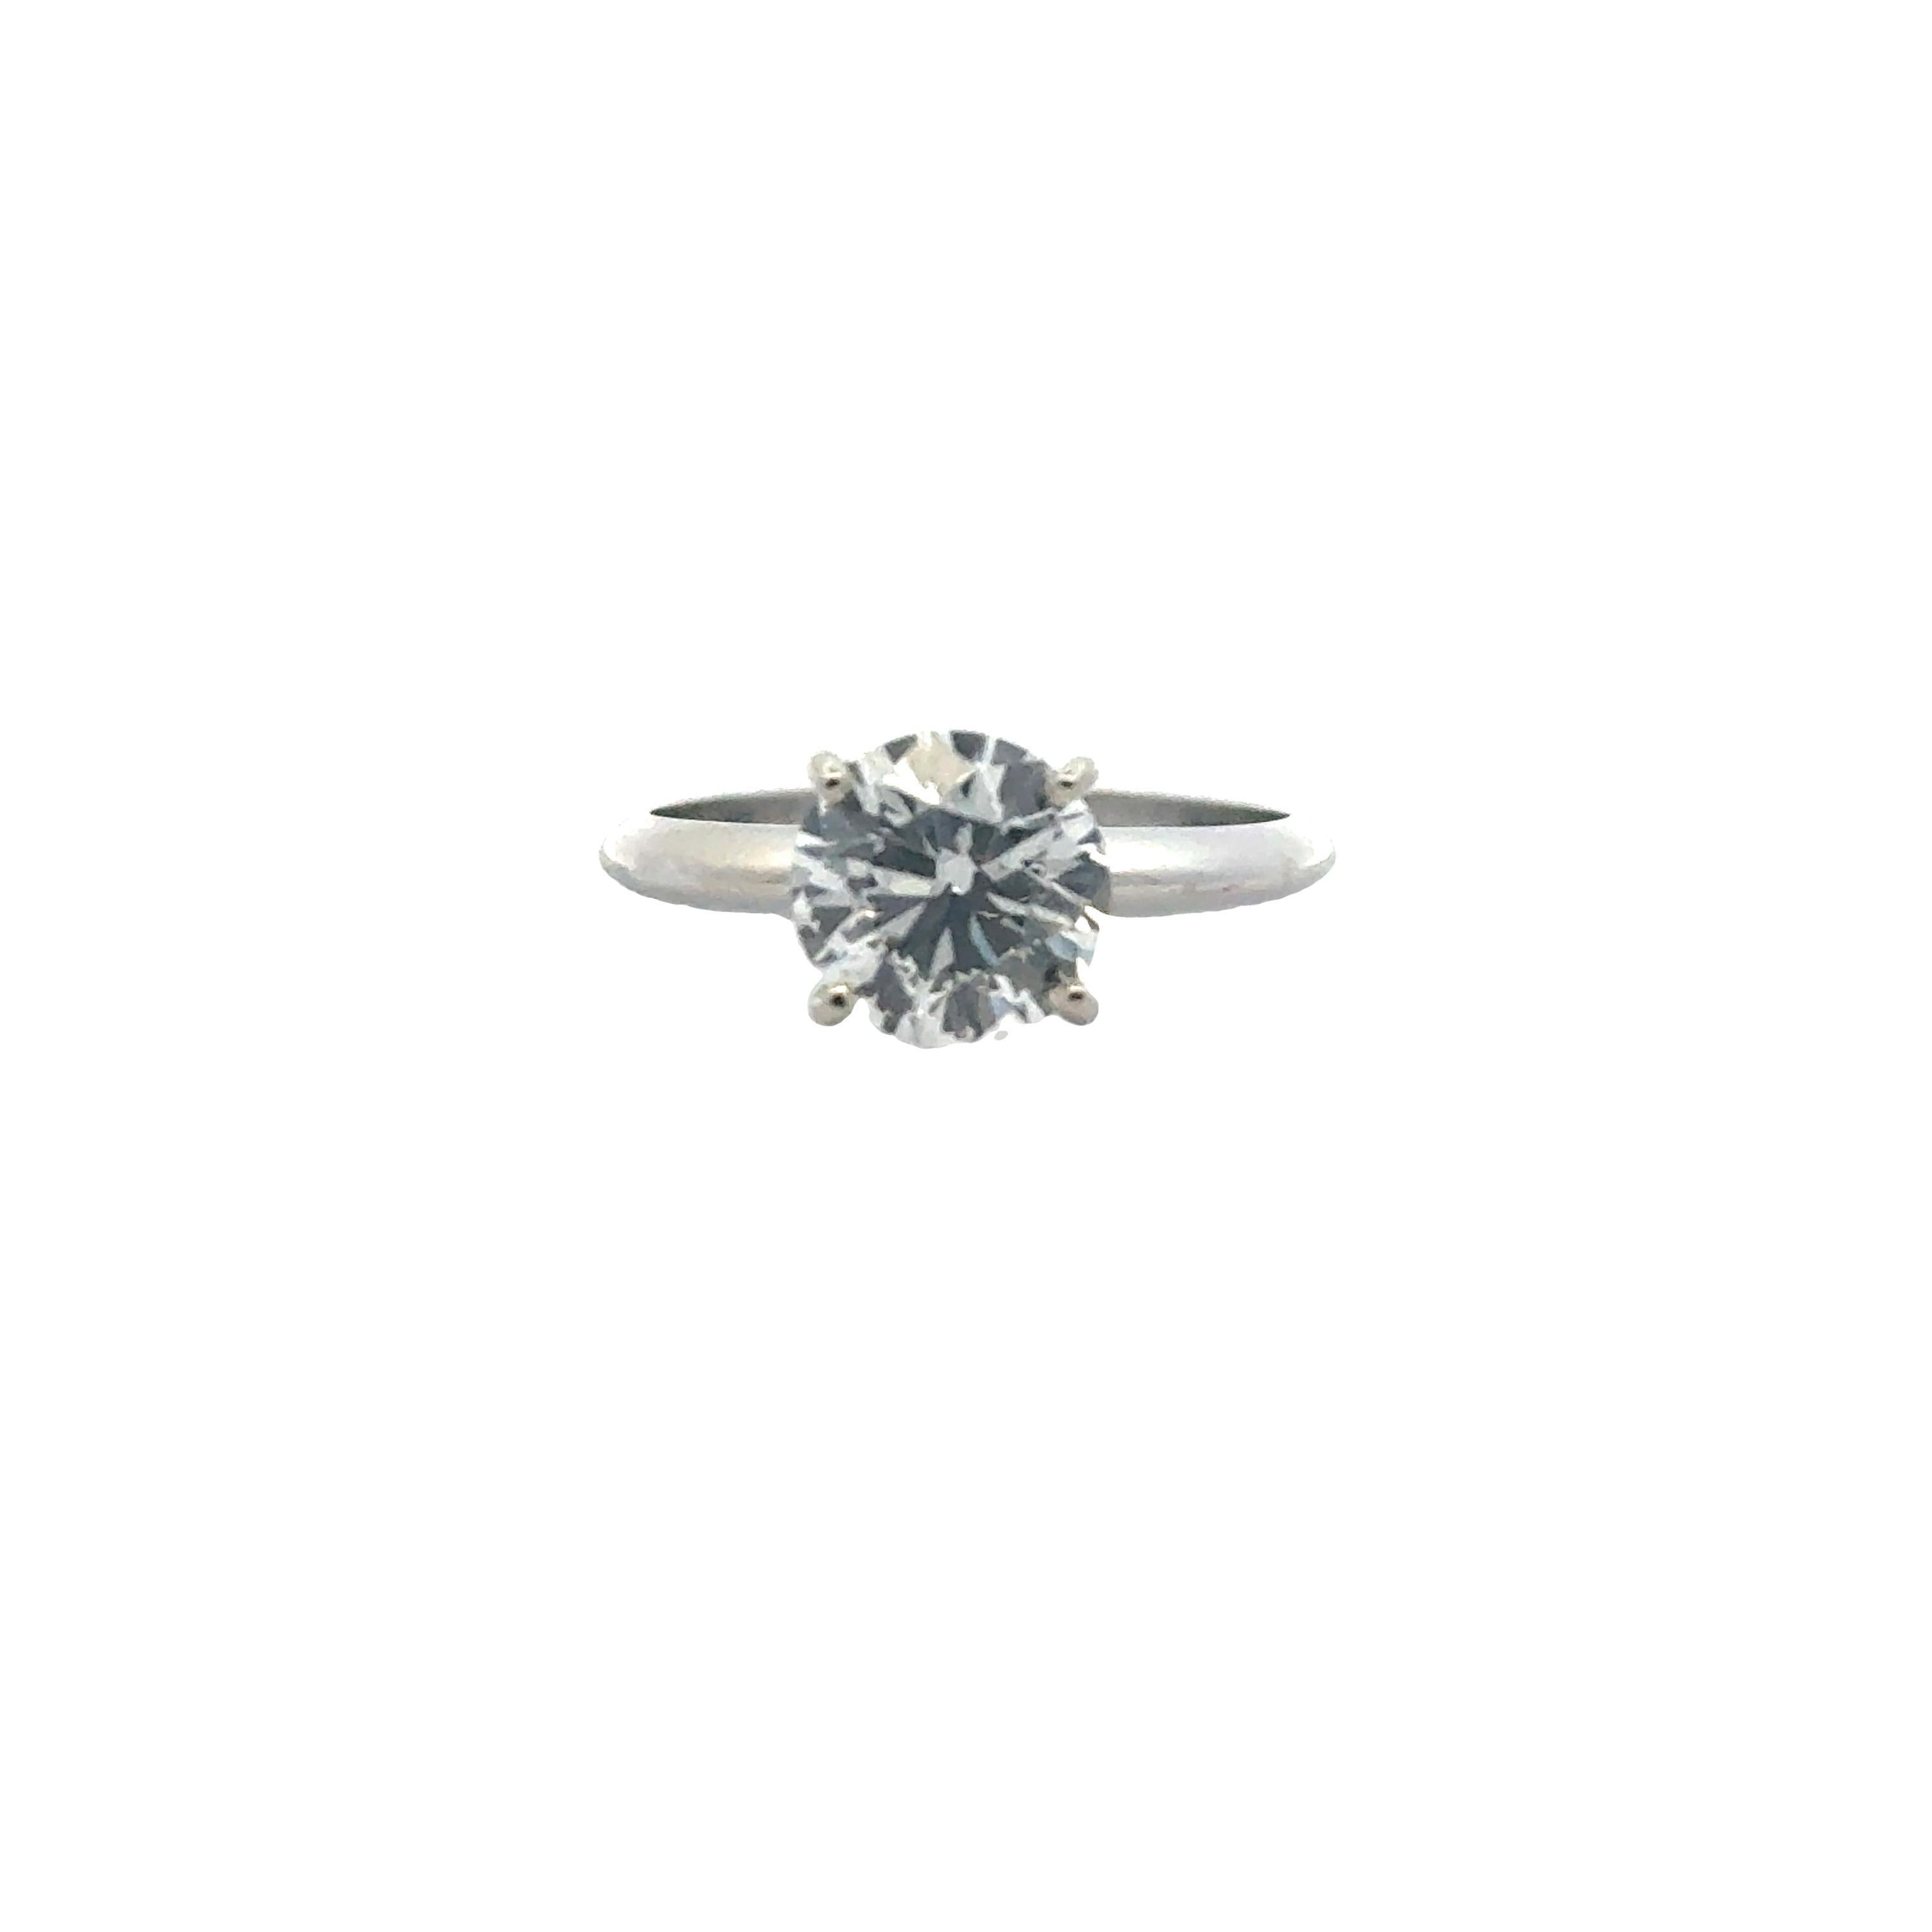 1.66 Carat Round Brilliant Diamond Solitaire Engagement Ring GIA Cert D/VVS2 For Sale 1